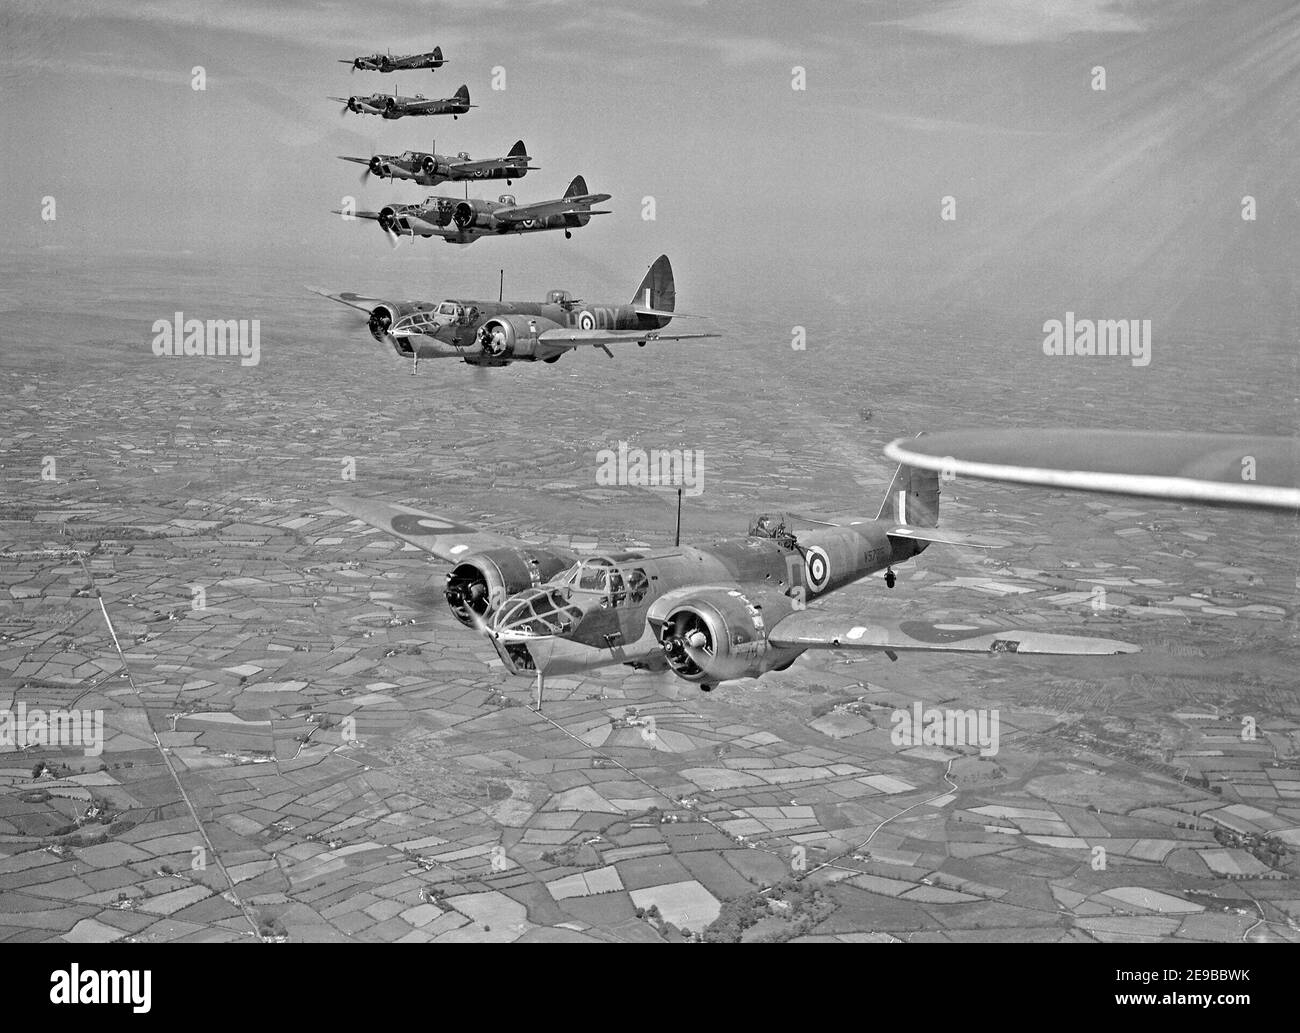 Bristol Blenheim Mk IVFs von No. 254 Squadron RAF fliegend von Aldergrove in Nordirland, Mai 1941. Sechs Blenheim Mark IVFs von No. 254 Squadron RAF, fliegen in Formation über Nordirland kurz nach der units Ankunft in Aldergrove, County Antrim, 1941 Stockfoto